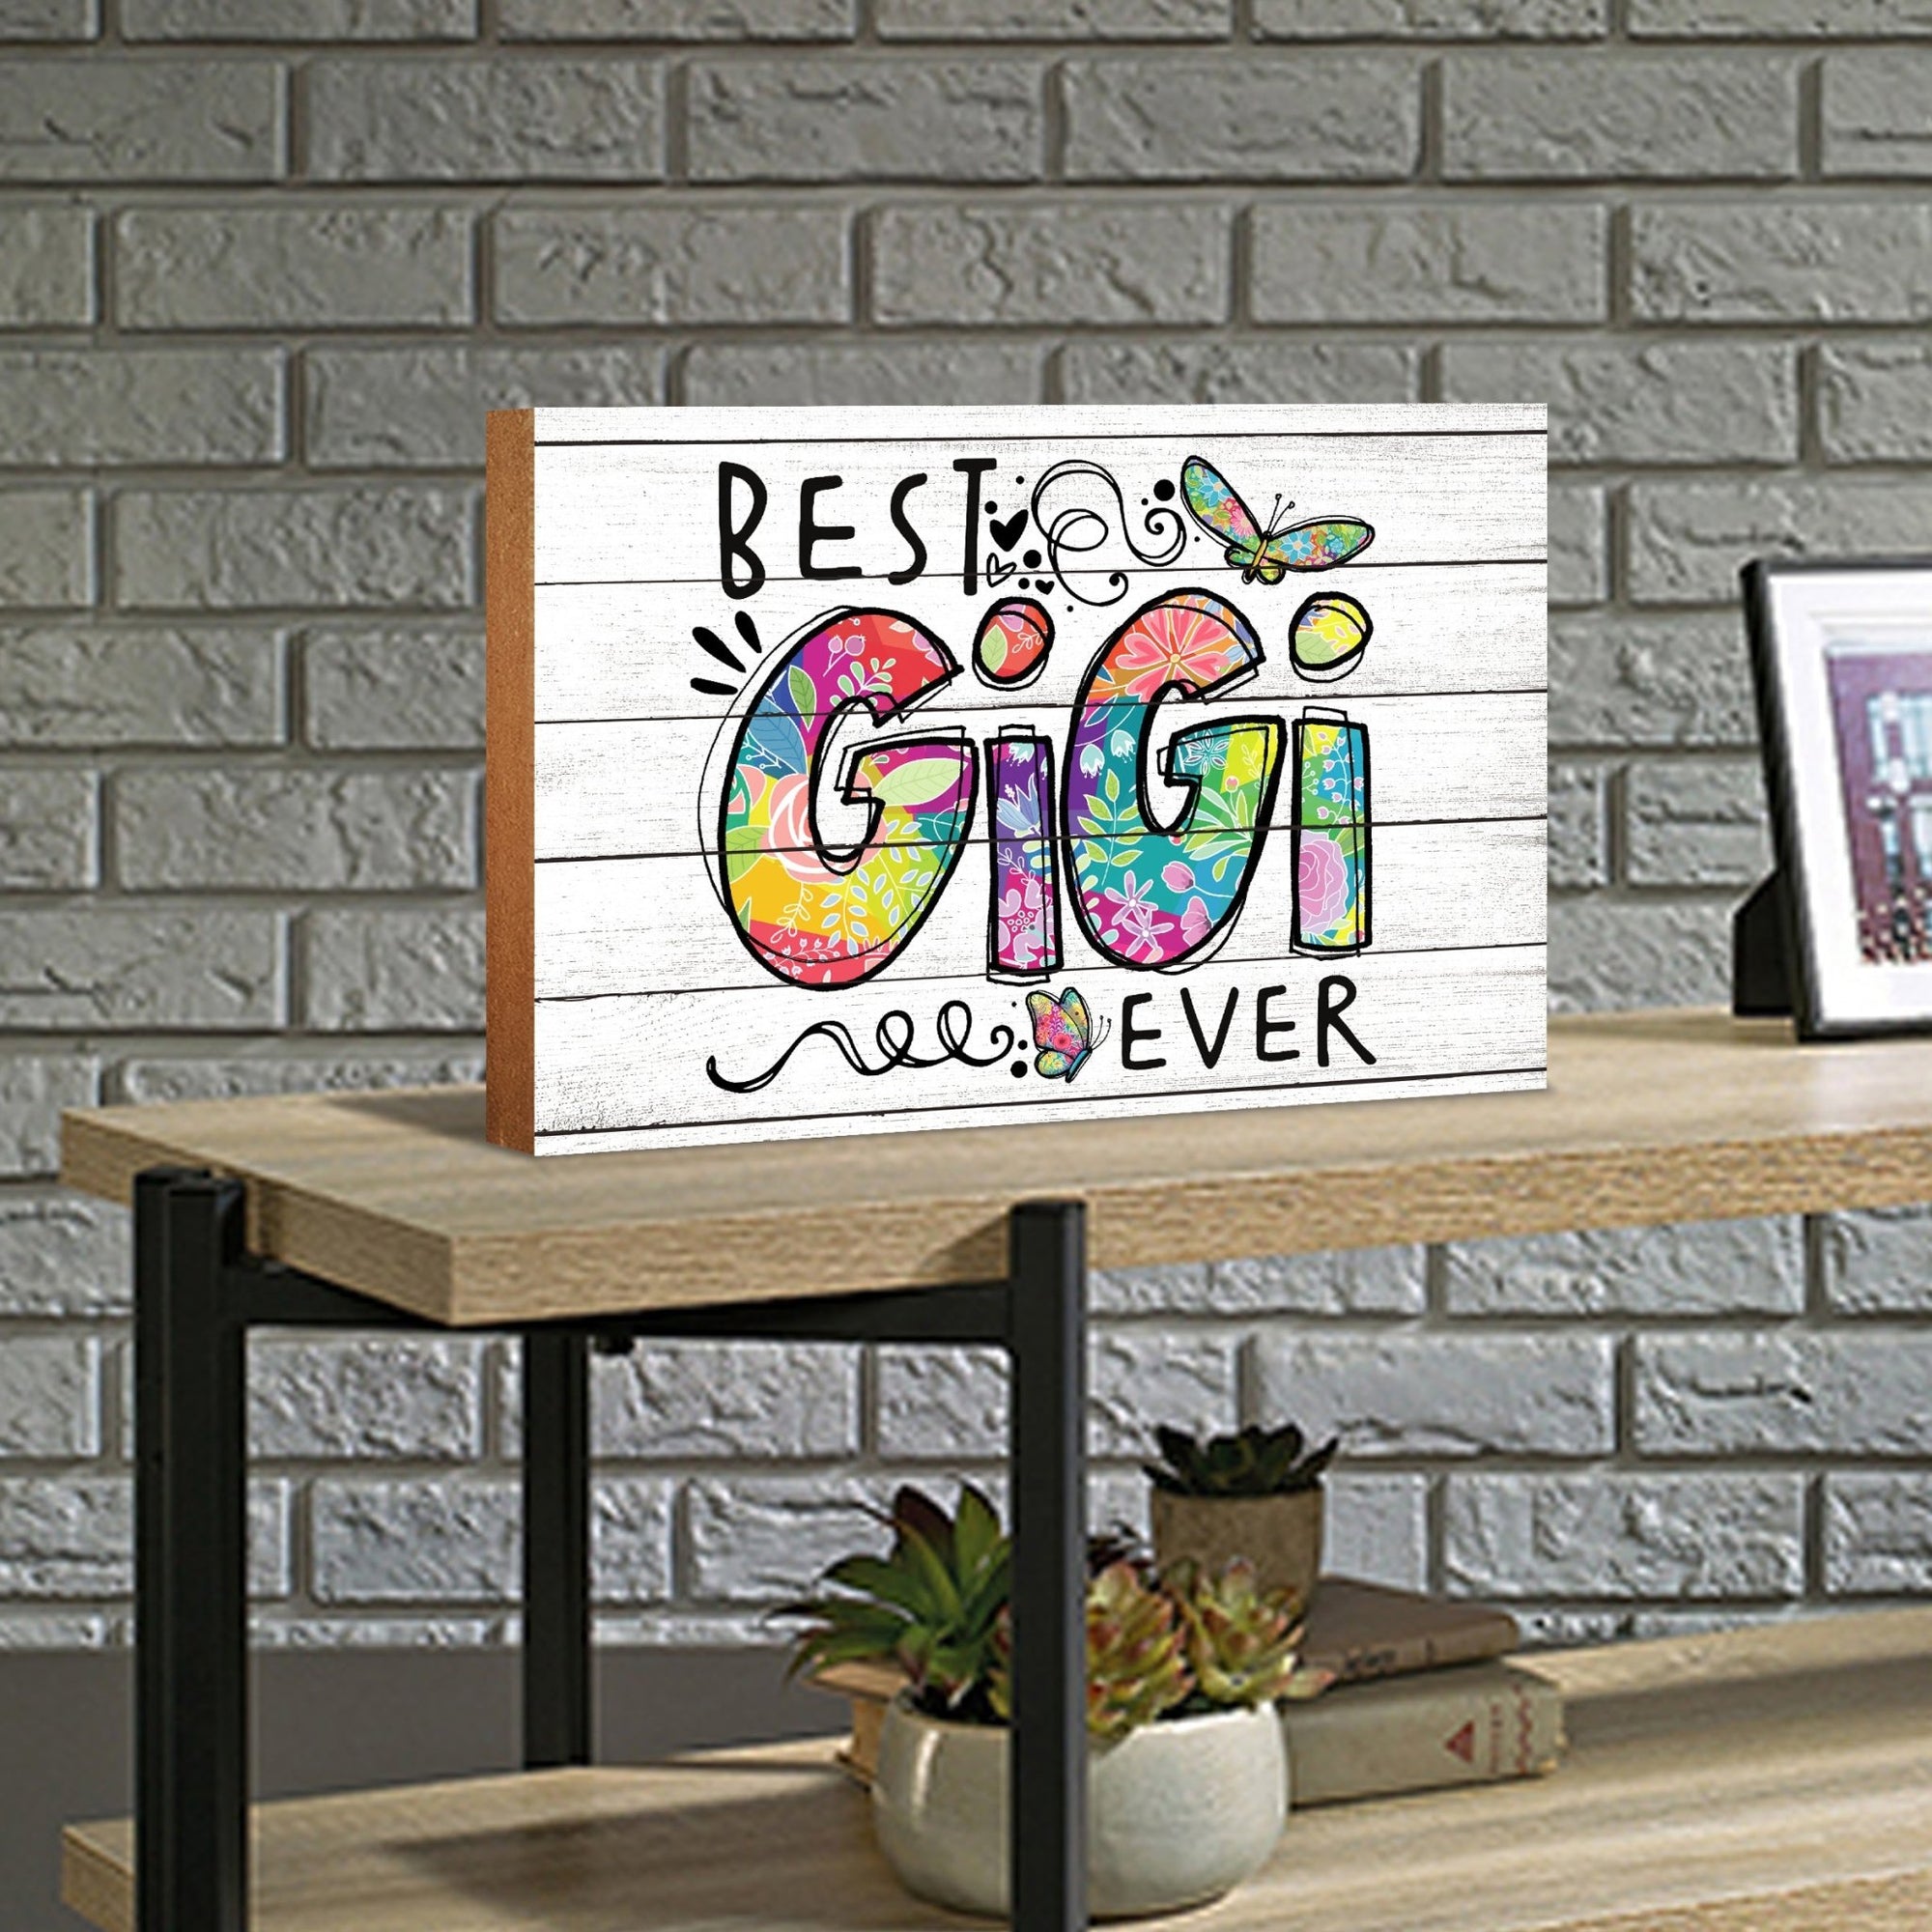 Modern-Inspired White Wooden Graffiti Art Shelf Sitter Gift Idea & Home Décor - Best Gigi Ever - LifeSong Milestones